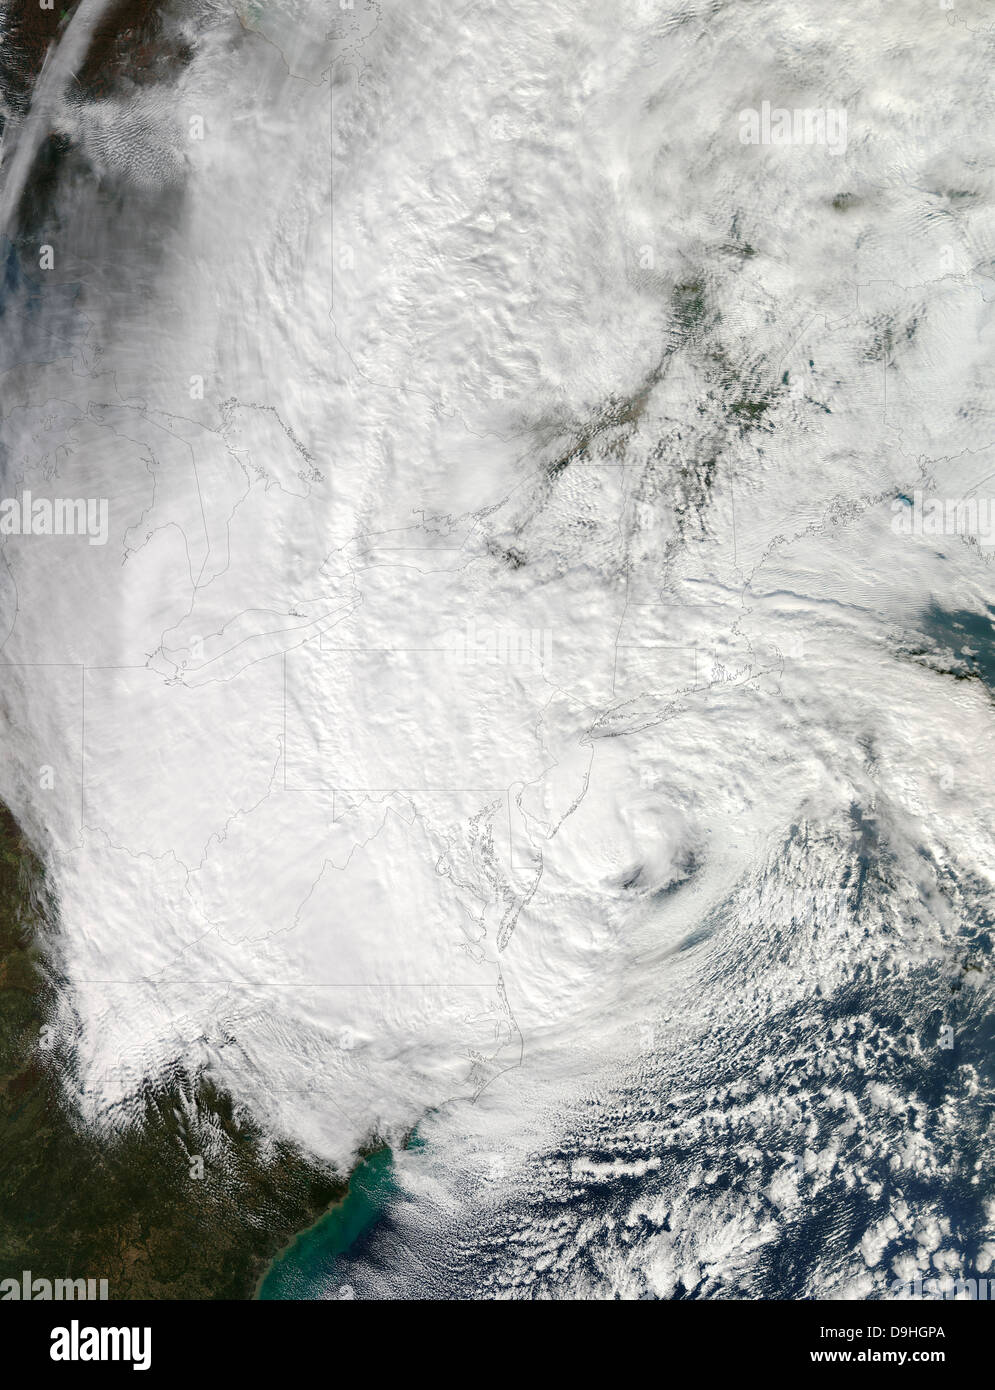 29 octobre 2012 - L'Ouragan Sandy, qu'il est descendu sur la côte nord-est des États-Unis. Banque D'Images